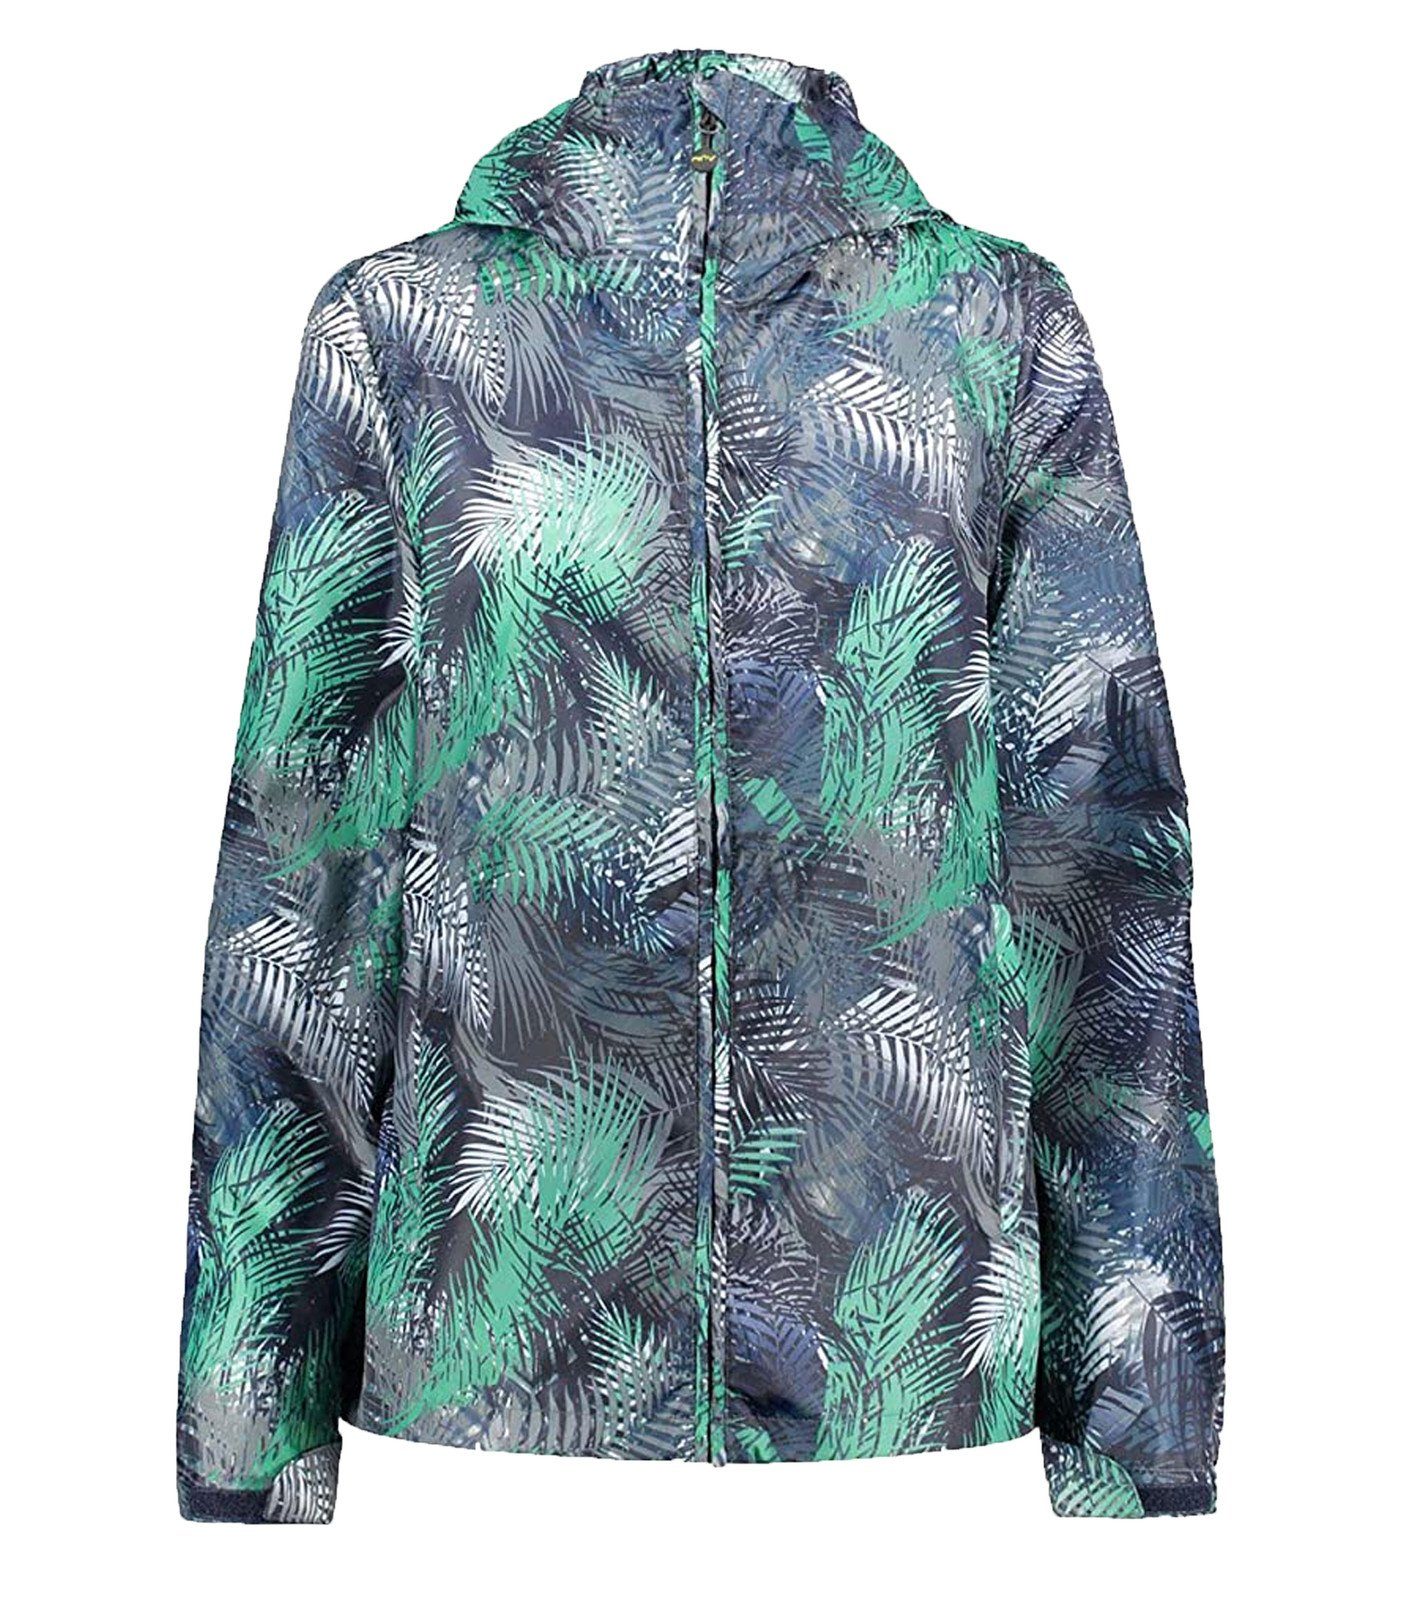 Meru Regenjacke »me°ru´ Clyde Allwetter-Jacke farbenfrohe Damen Regen-Jacke  Wind-Jacke Blau« online kaufen | OTTO